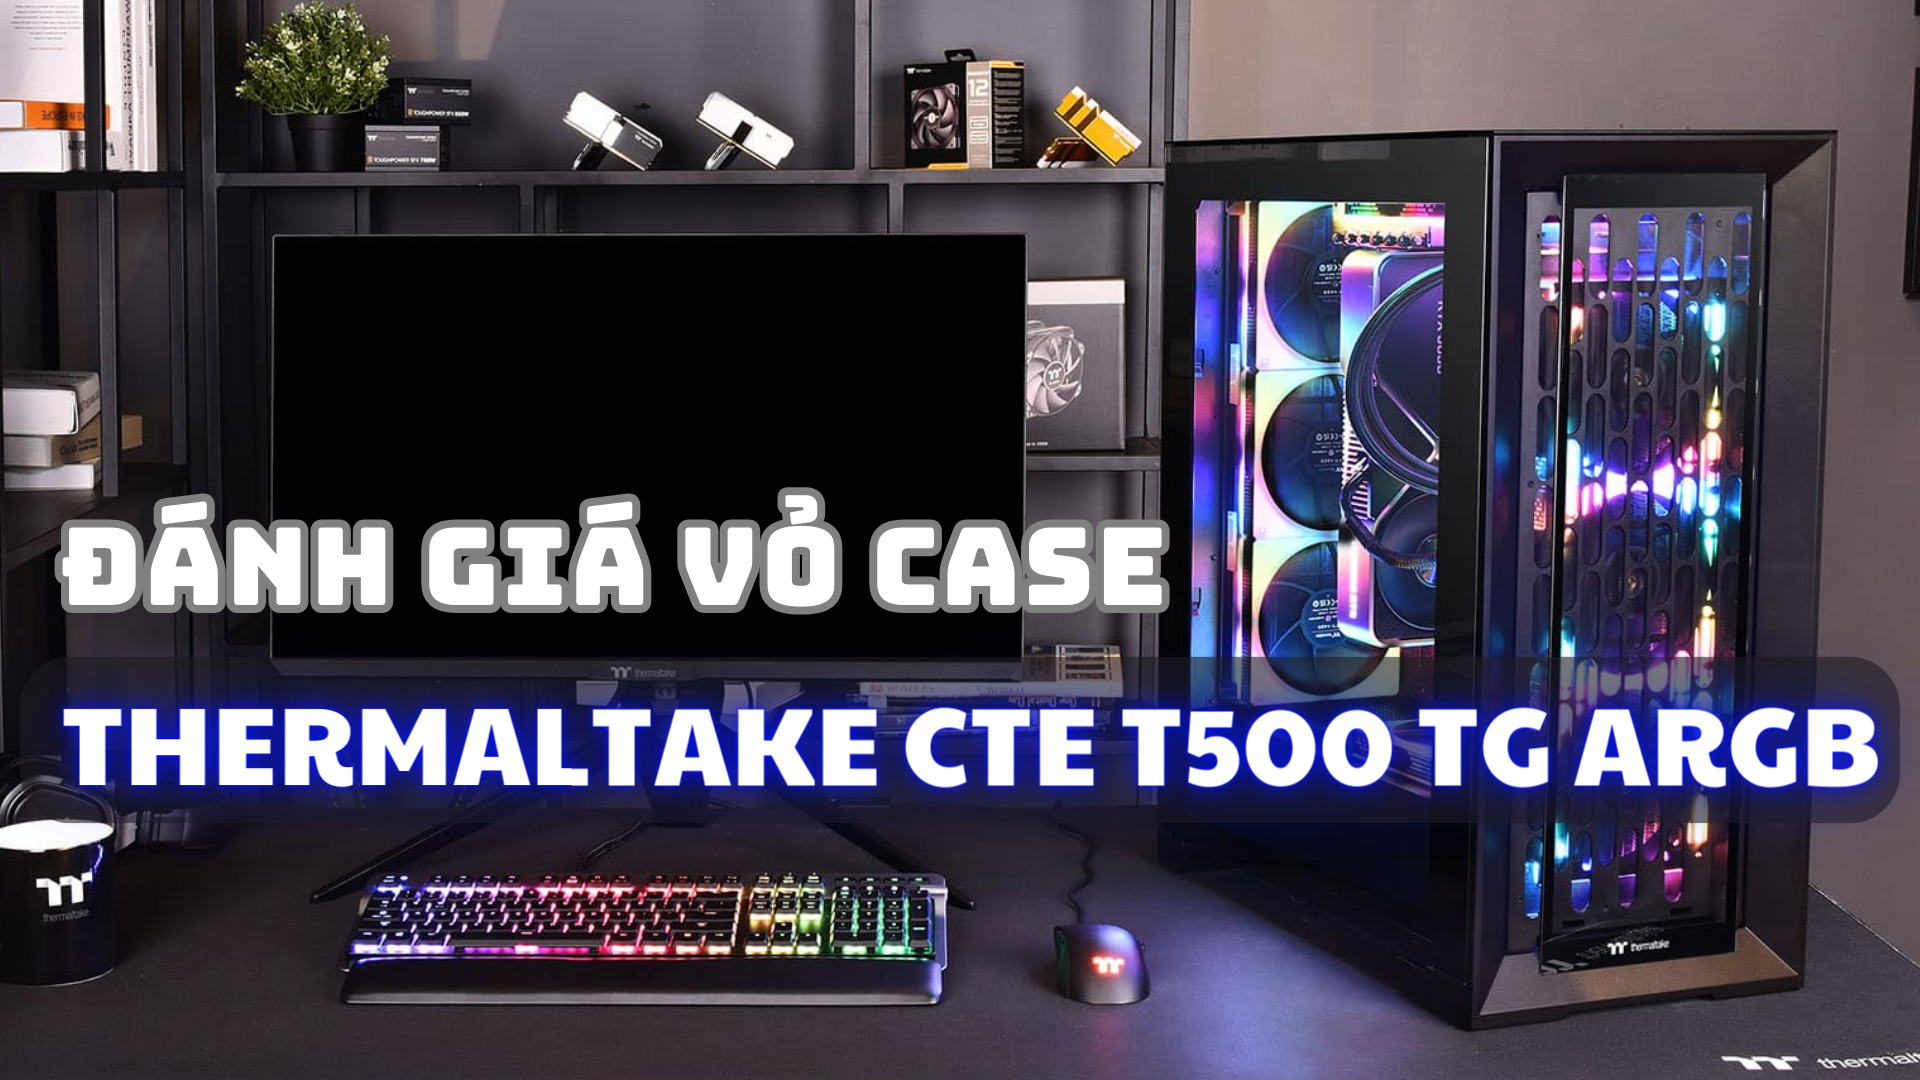 vo-case-thermaltake-cte-t500-tg-thumb